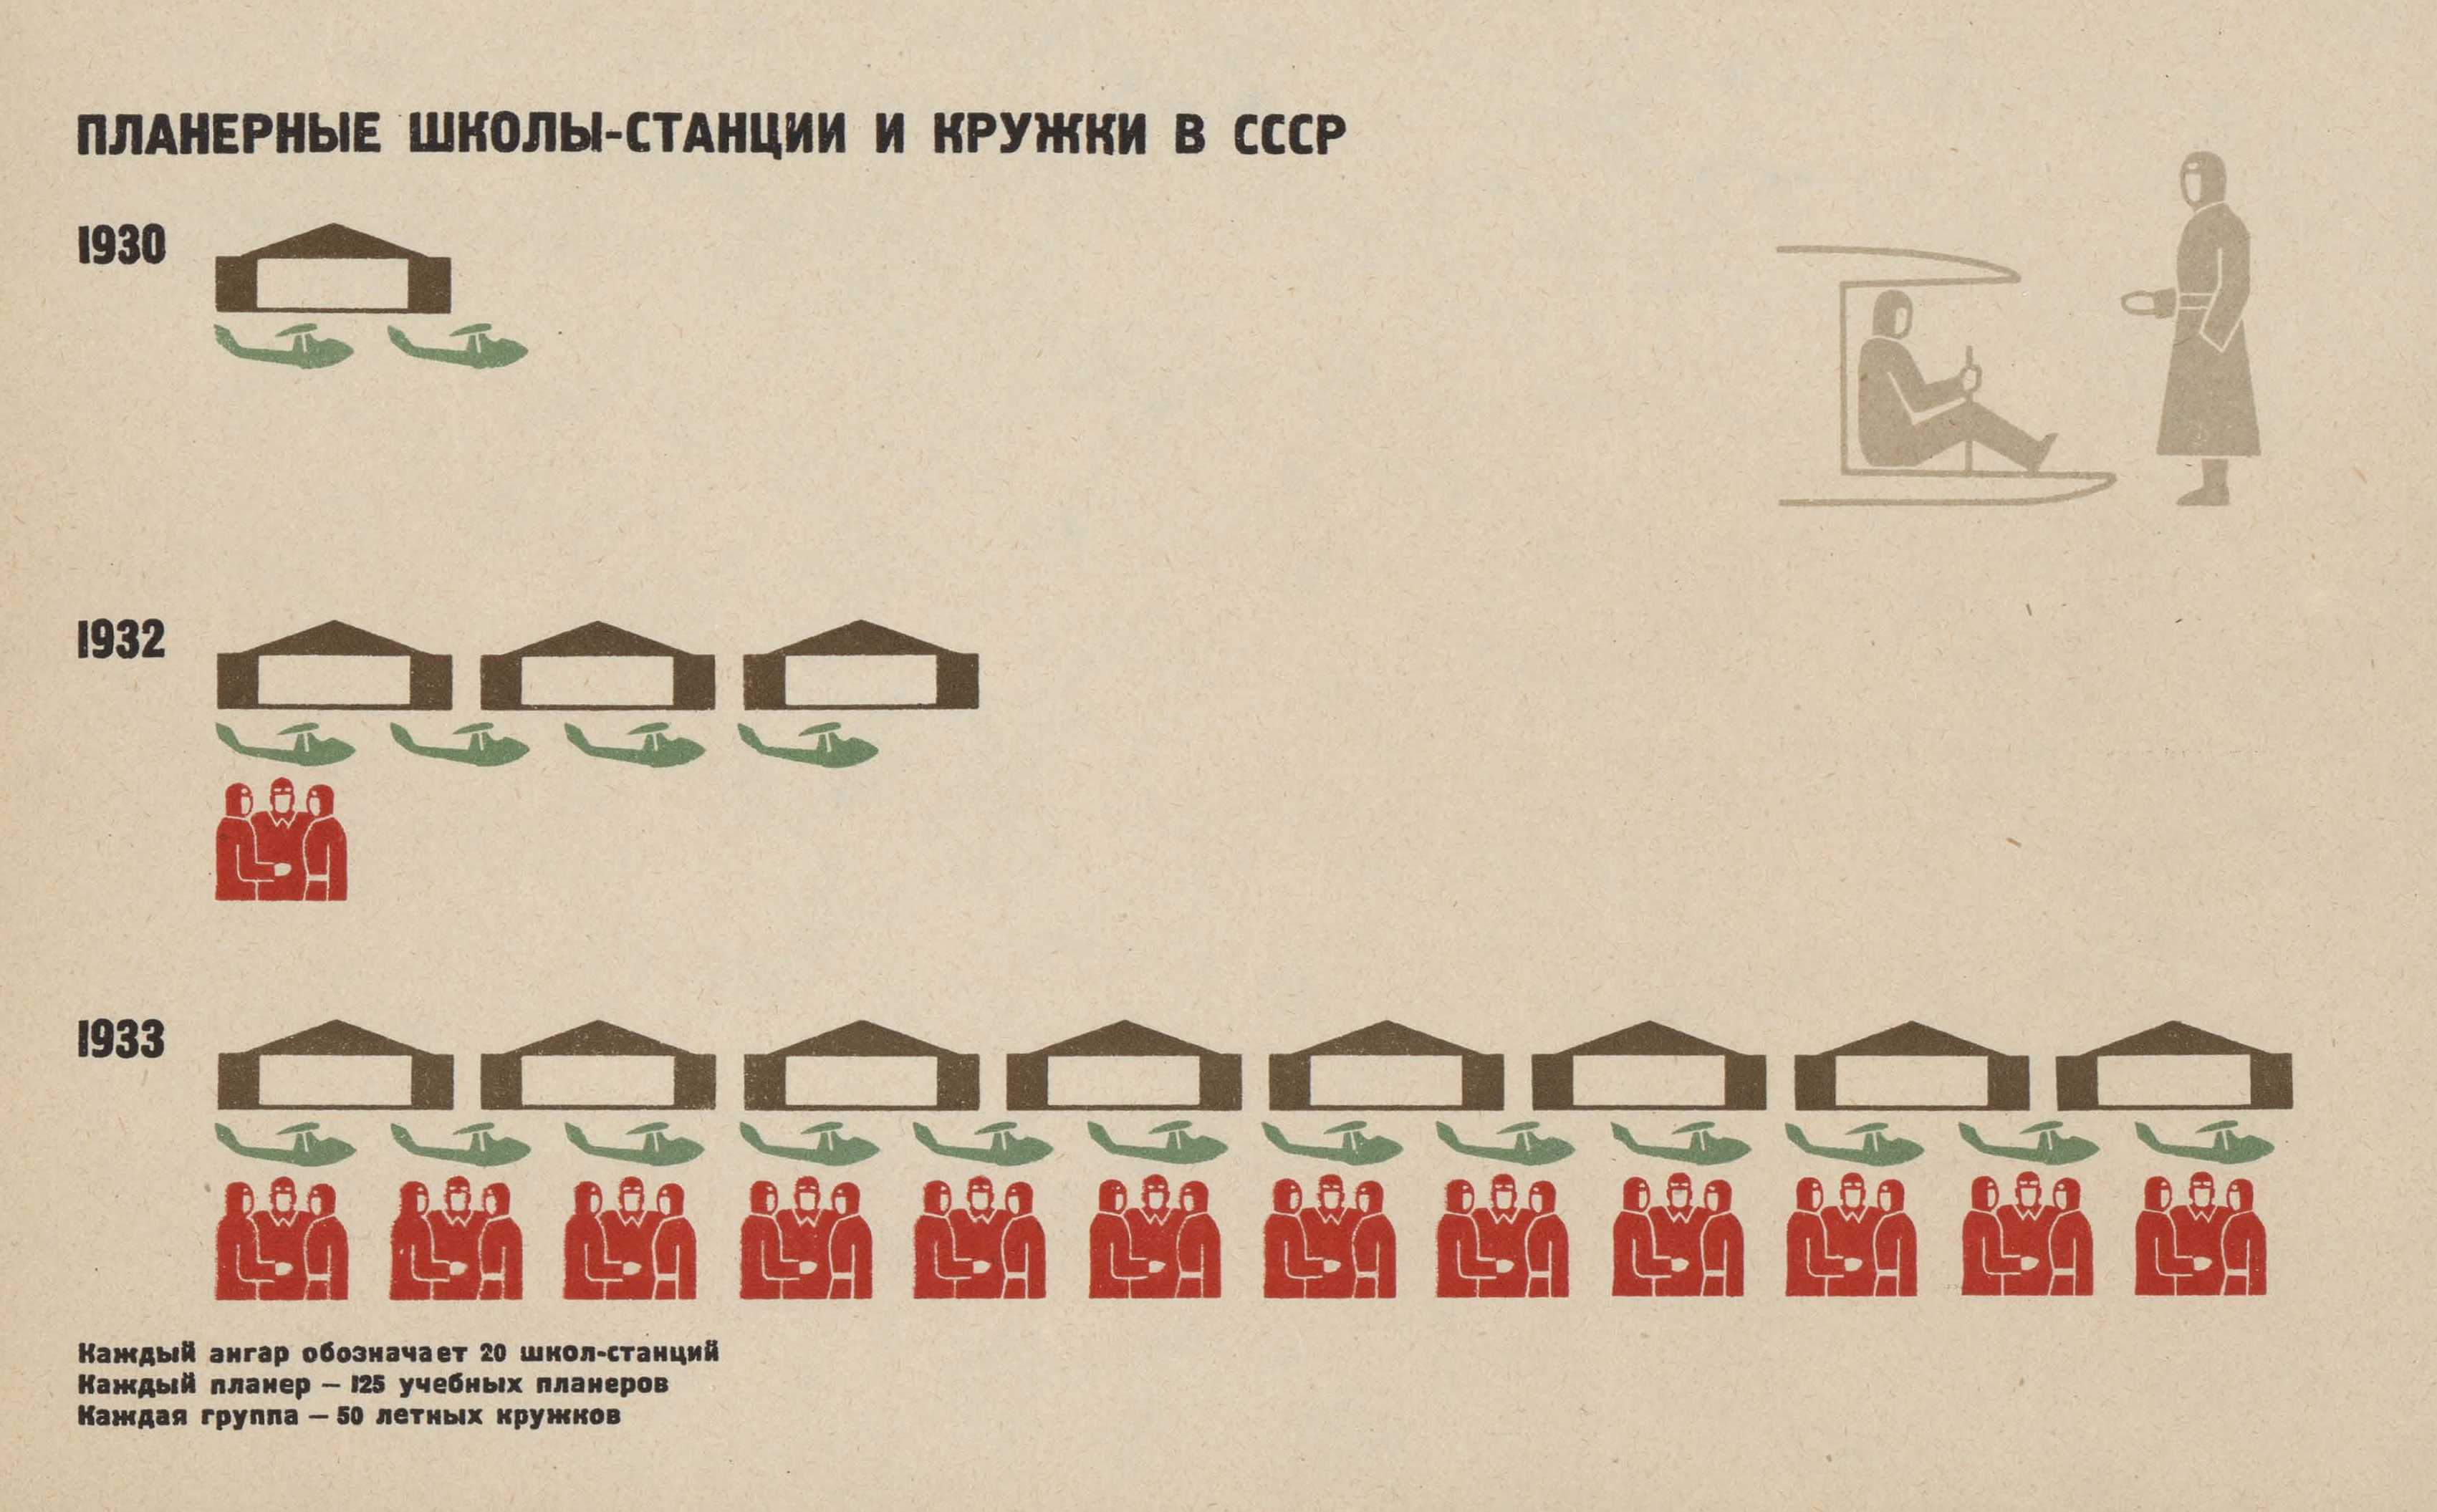 Табл. 39. ПЛАНЕРНЫЕ ШКОЛЫ-СТАНЦИИ И КРУЖКИ В СССР